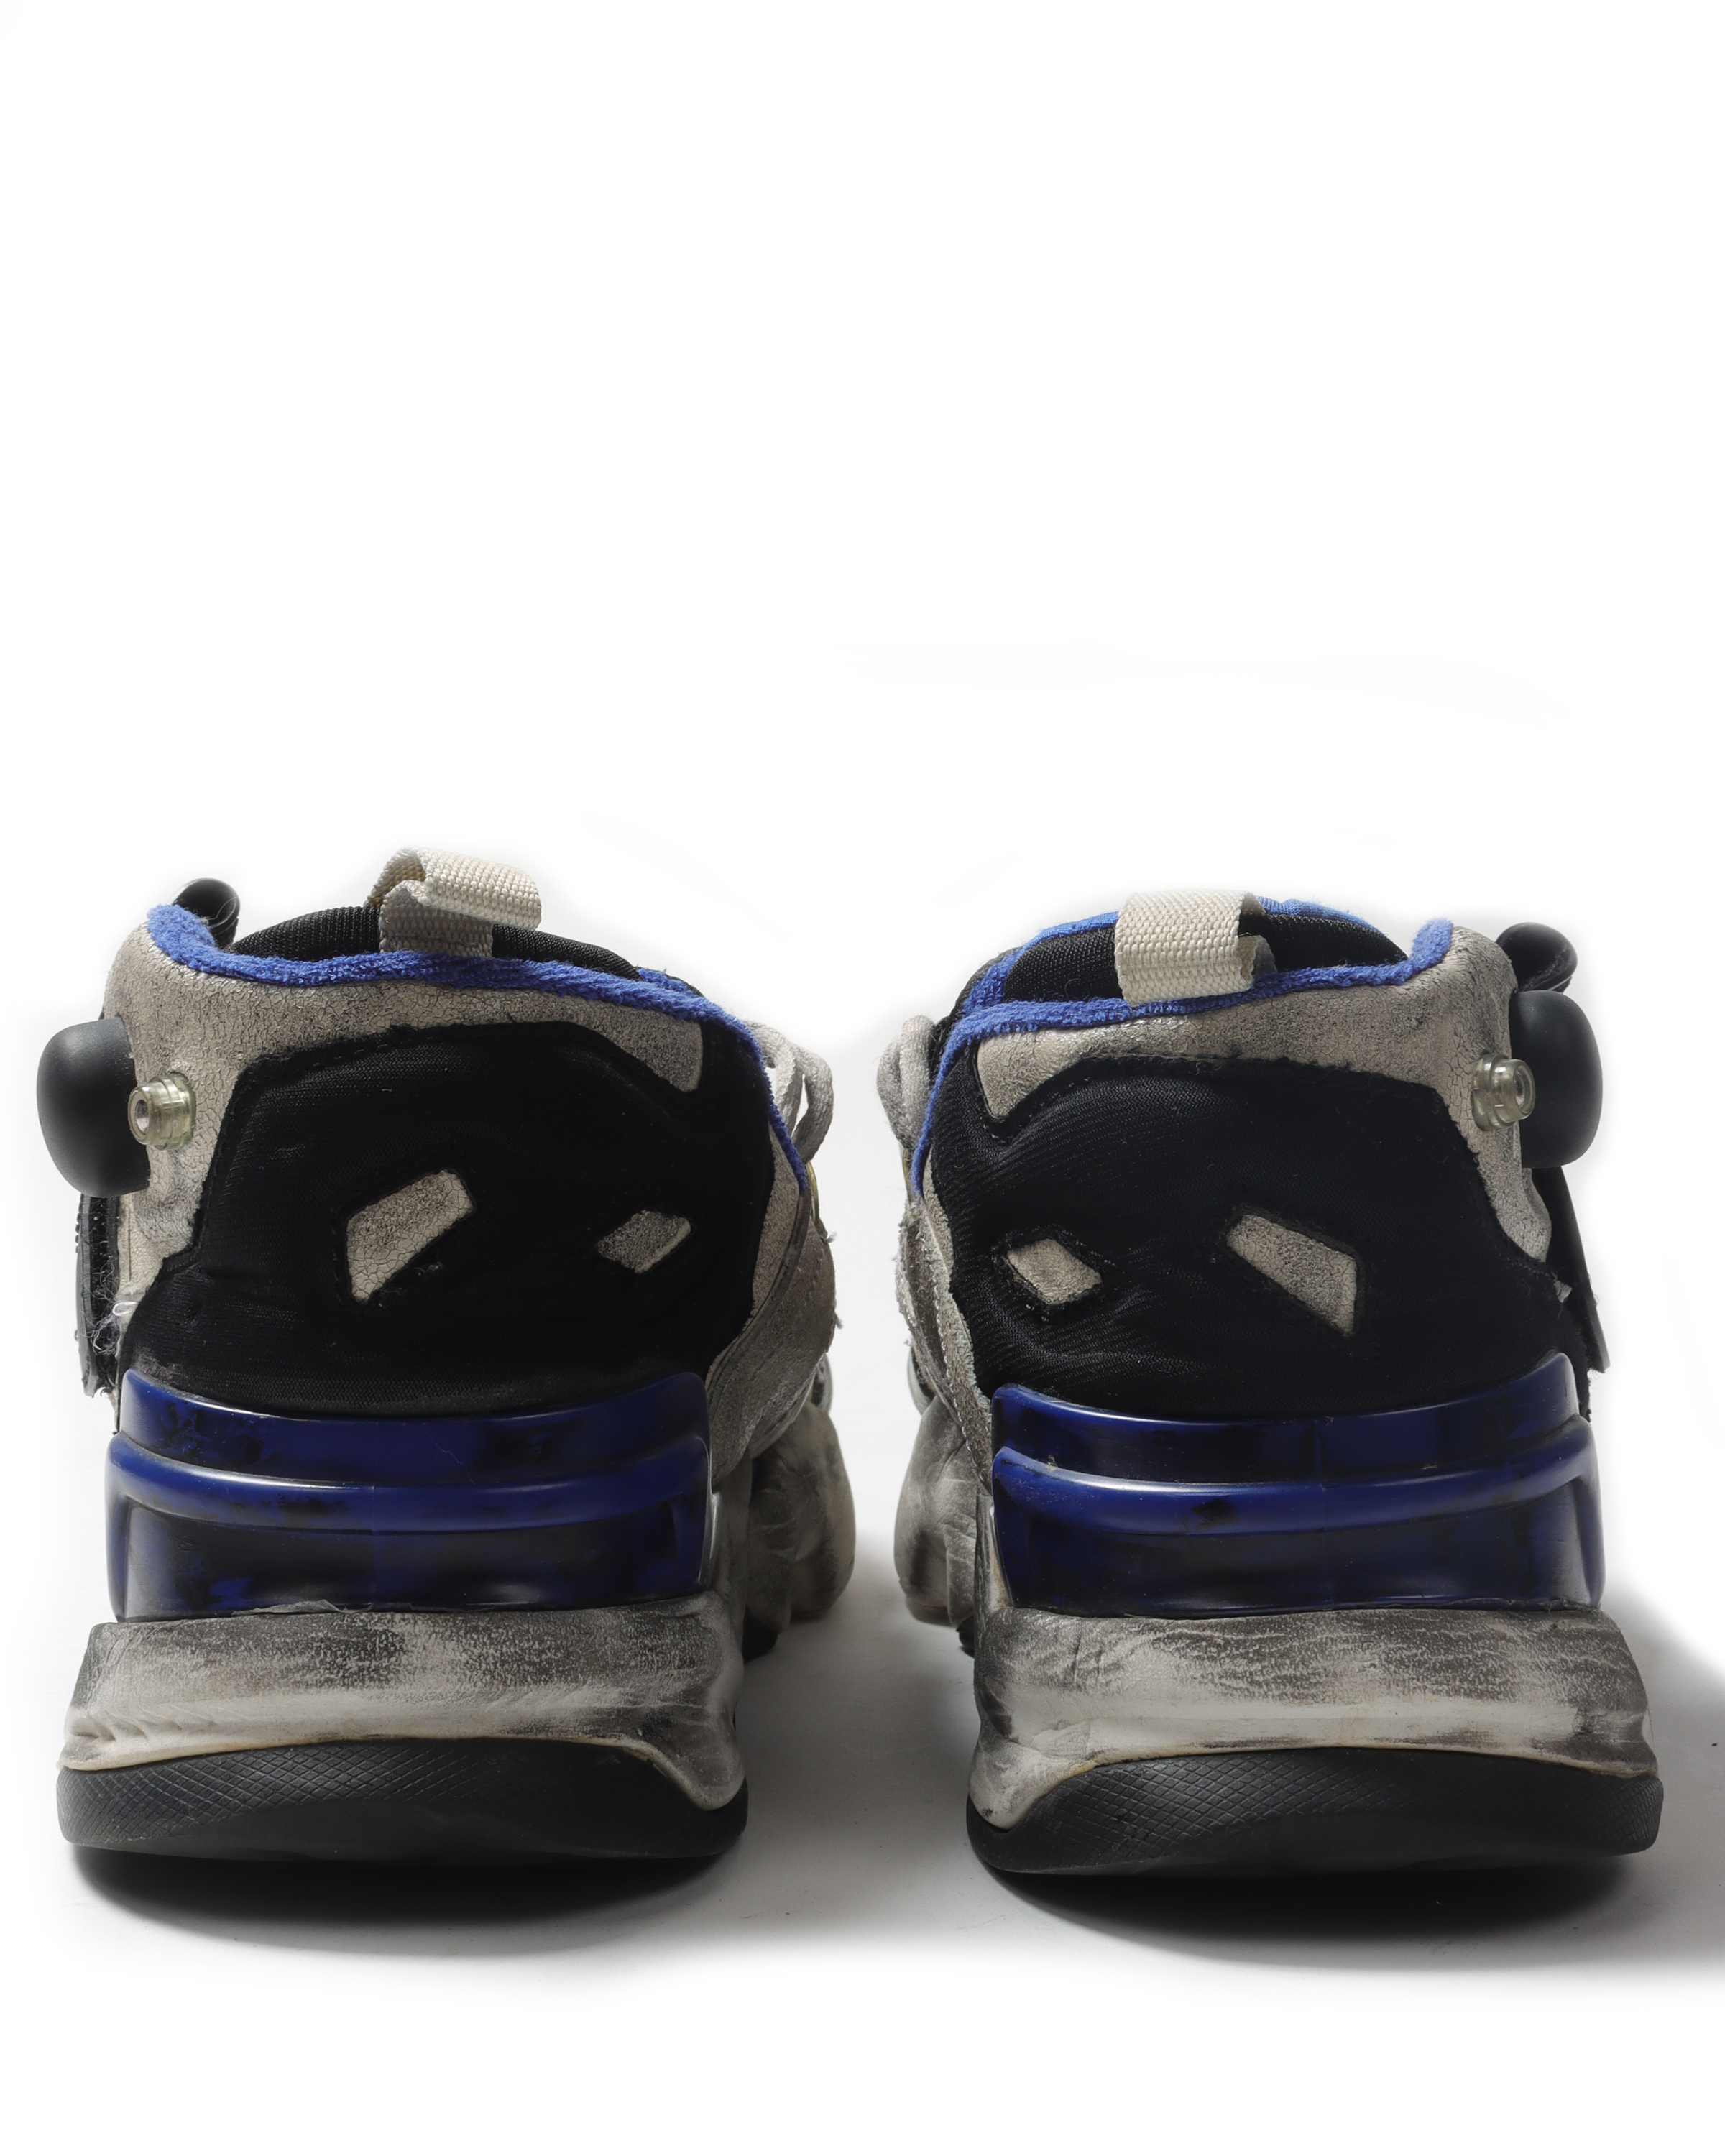 Reebok Genetically Modified Pump Sneakers